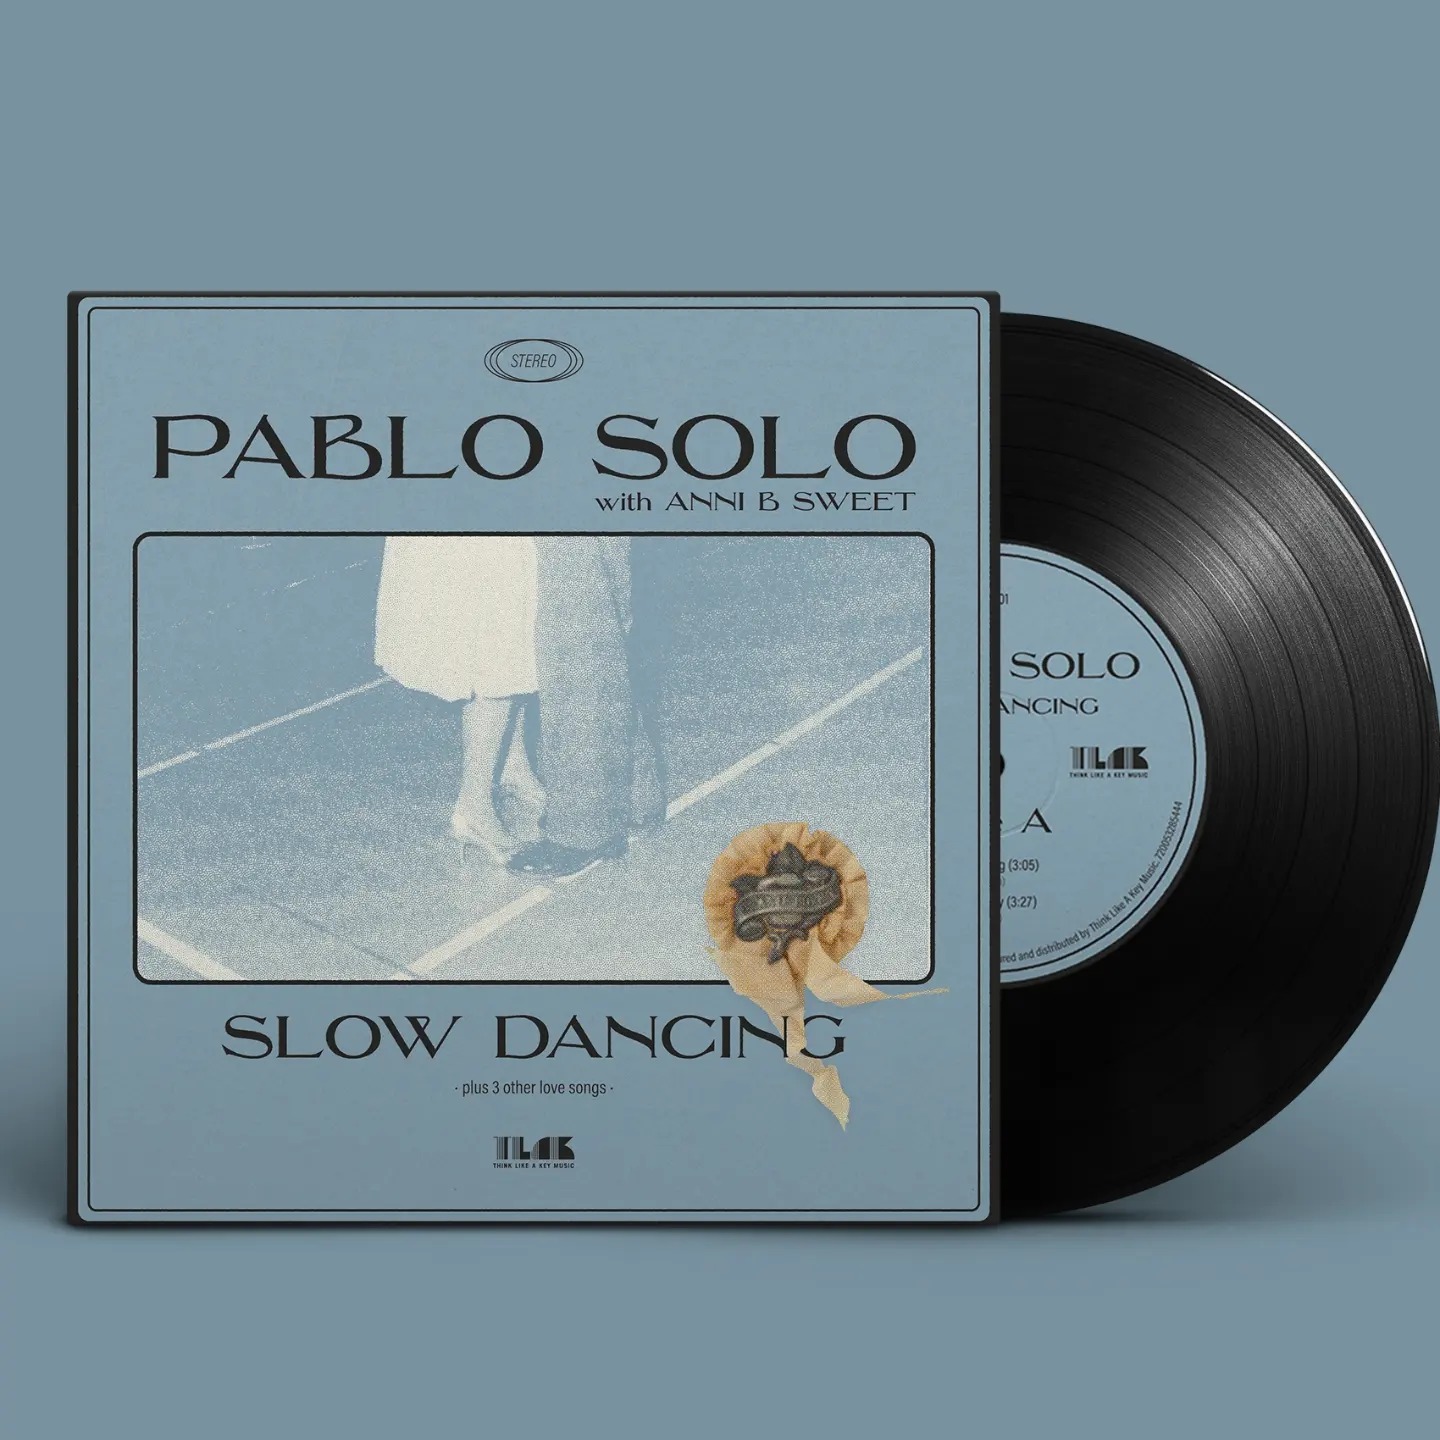 Culturaencadena.com entrevista en Exclusiva a Pablo Solo, con motivo de su nuevo EP que incluye un dúo junto a Anni B Sweet